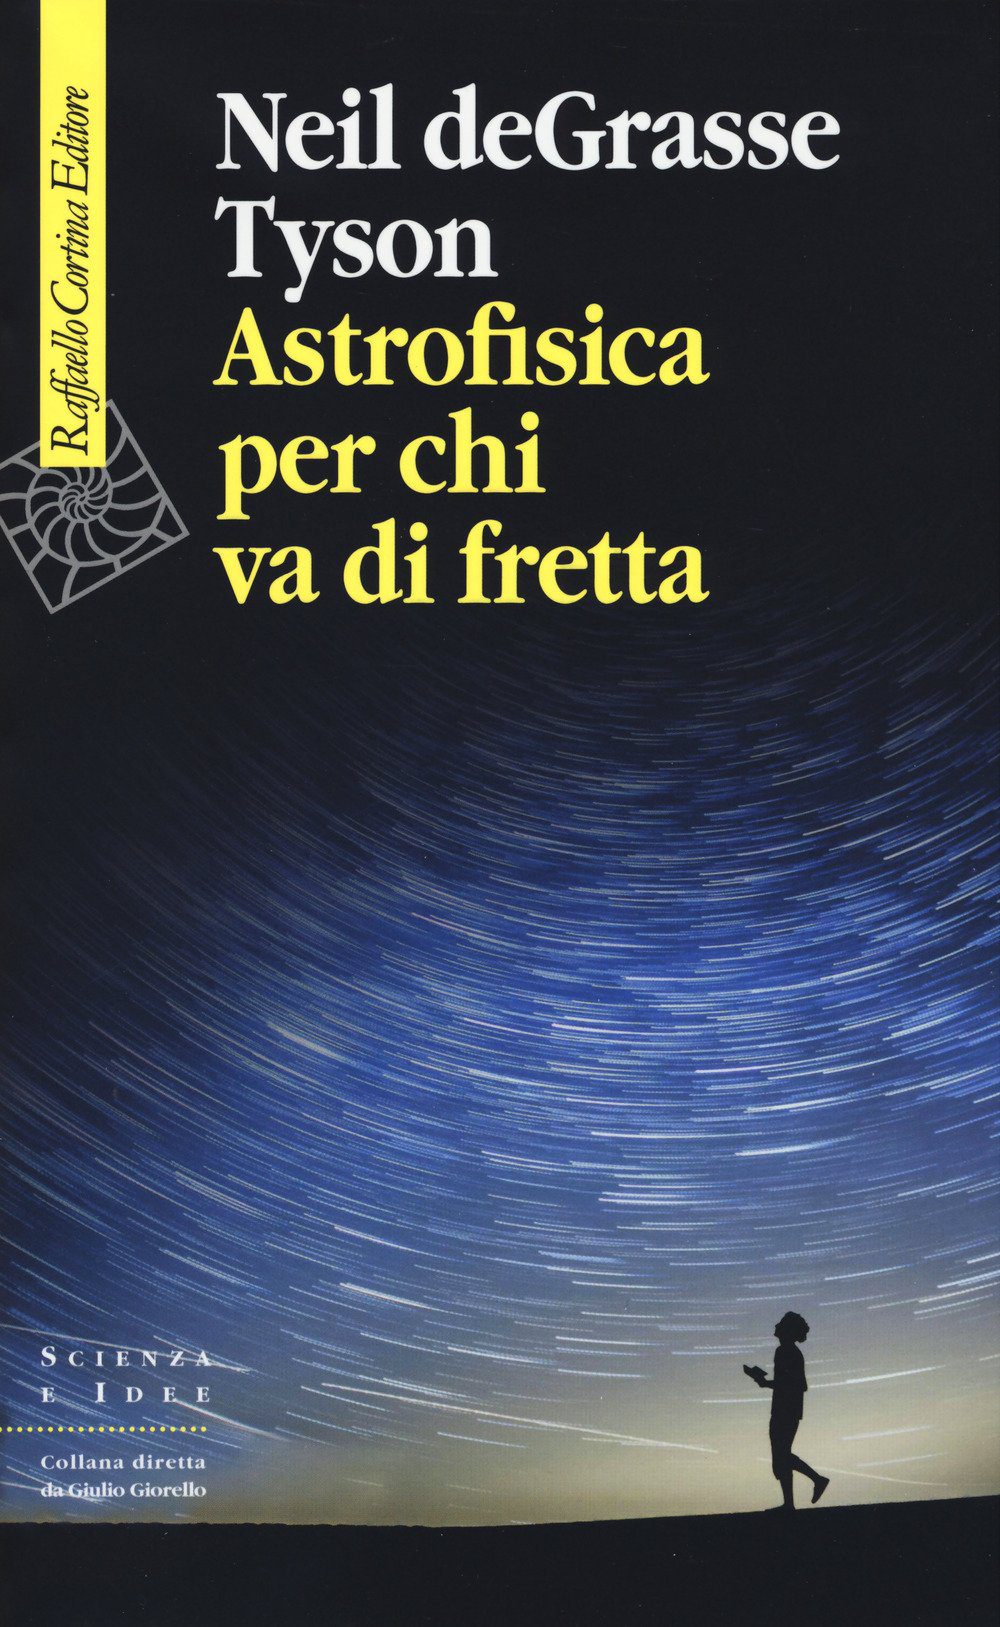 Astrofisica - Neil Degrasse Tyson - Astrofisica Per Chi Va Di Fretta (Cortina, 2018)